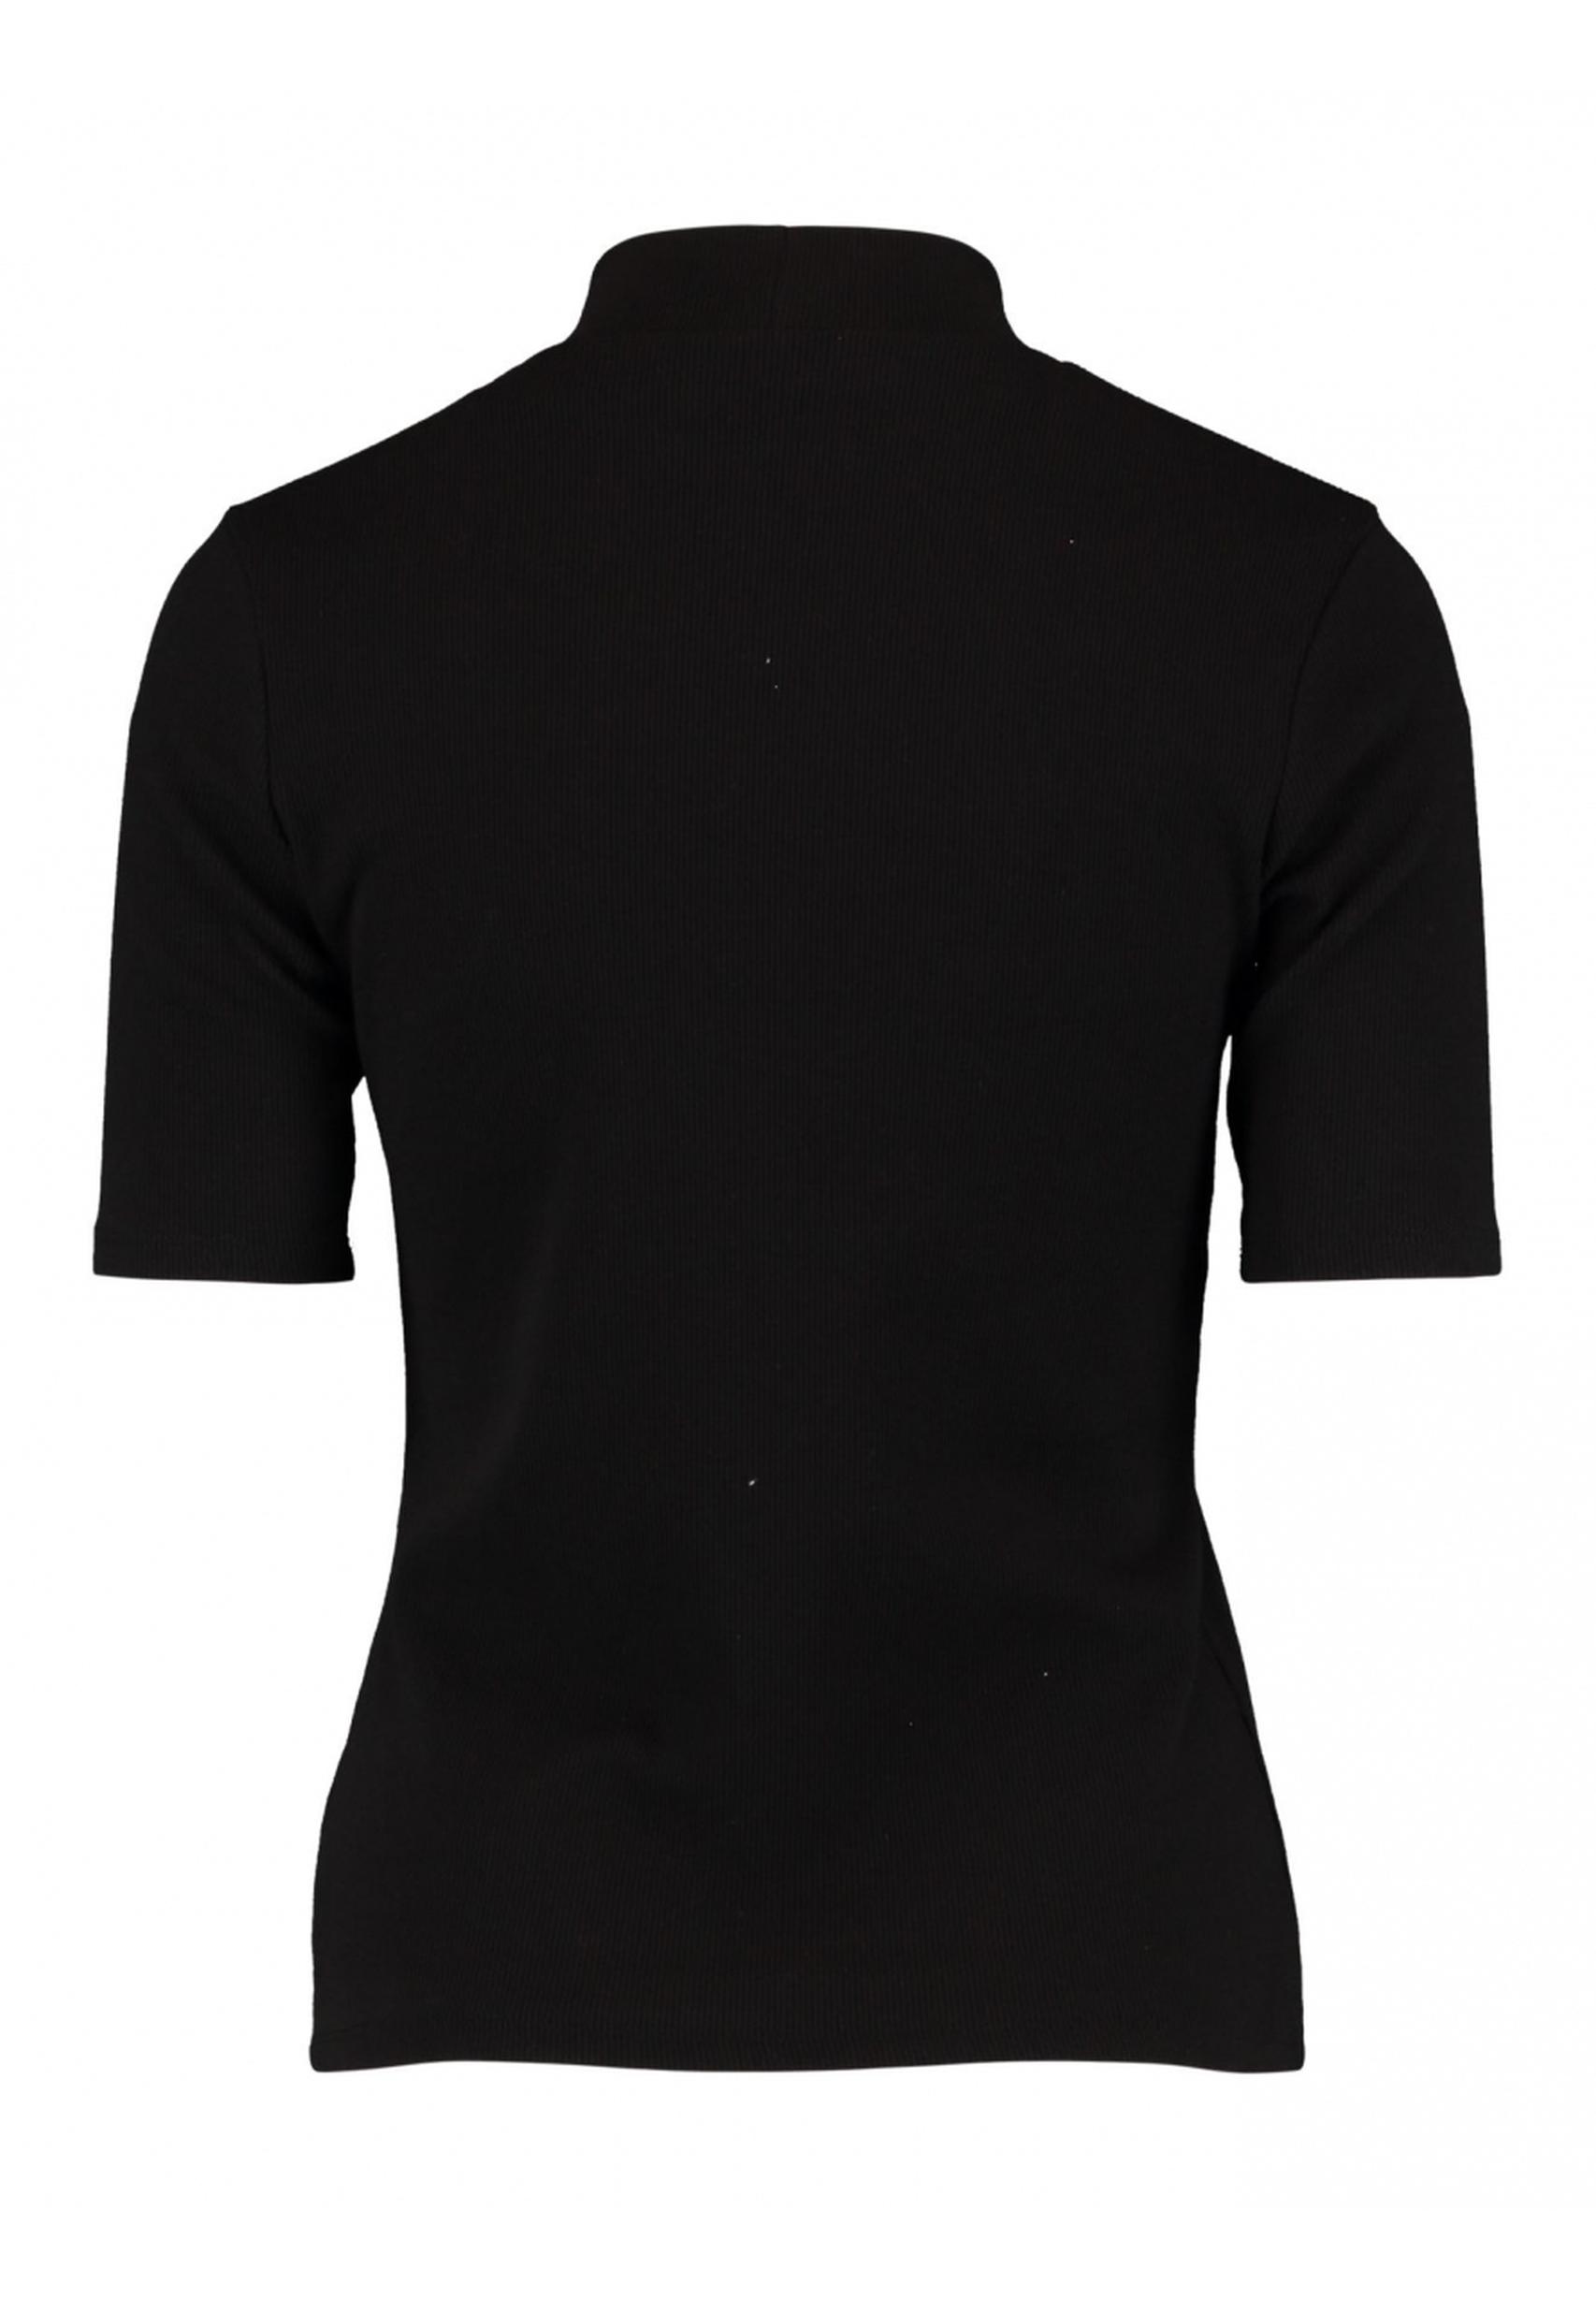 Zeitloses Shirt Ve44ra aus der Kollektion von Zabaione in schwarz -  WI-C-201-0301